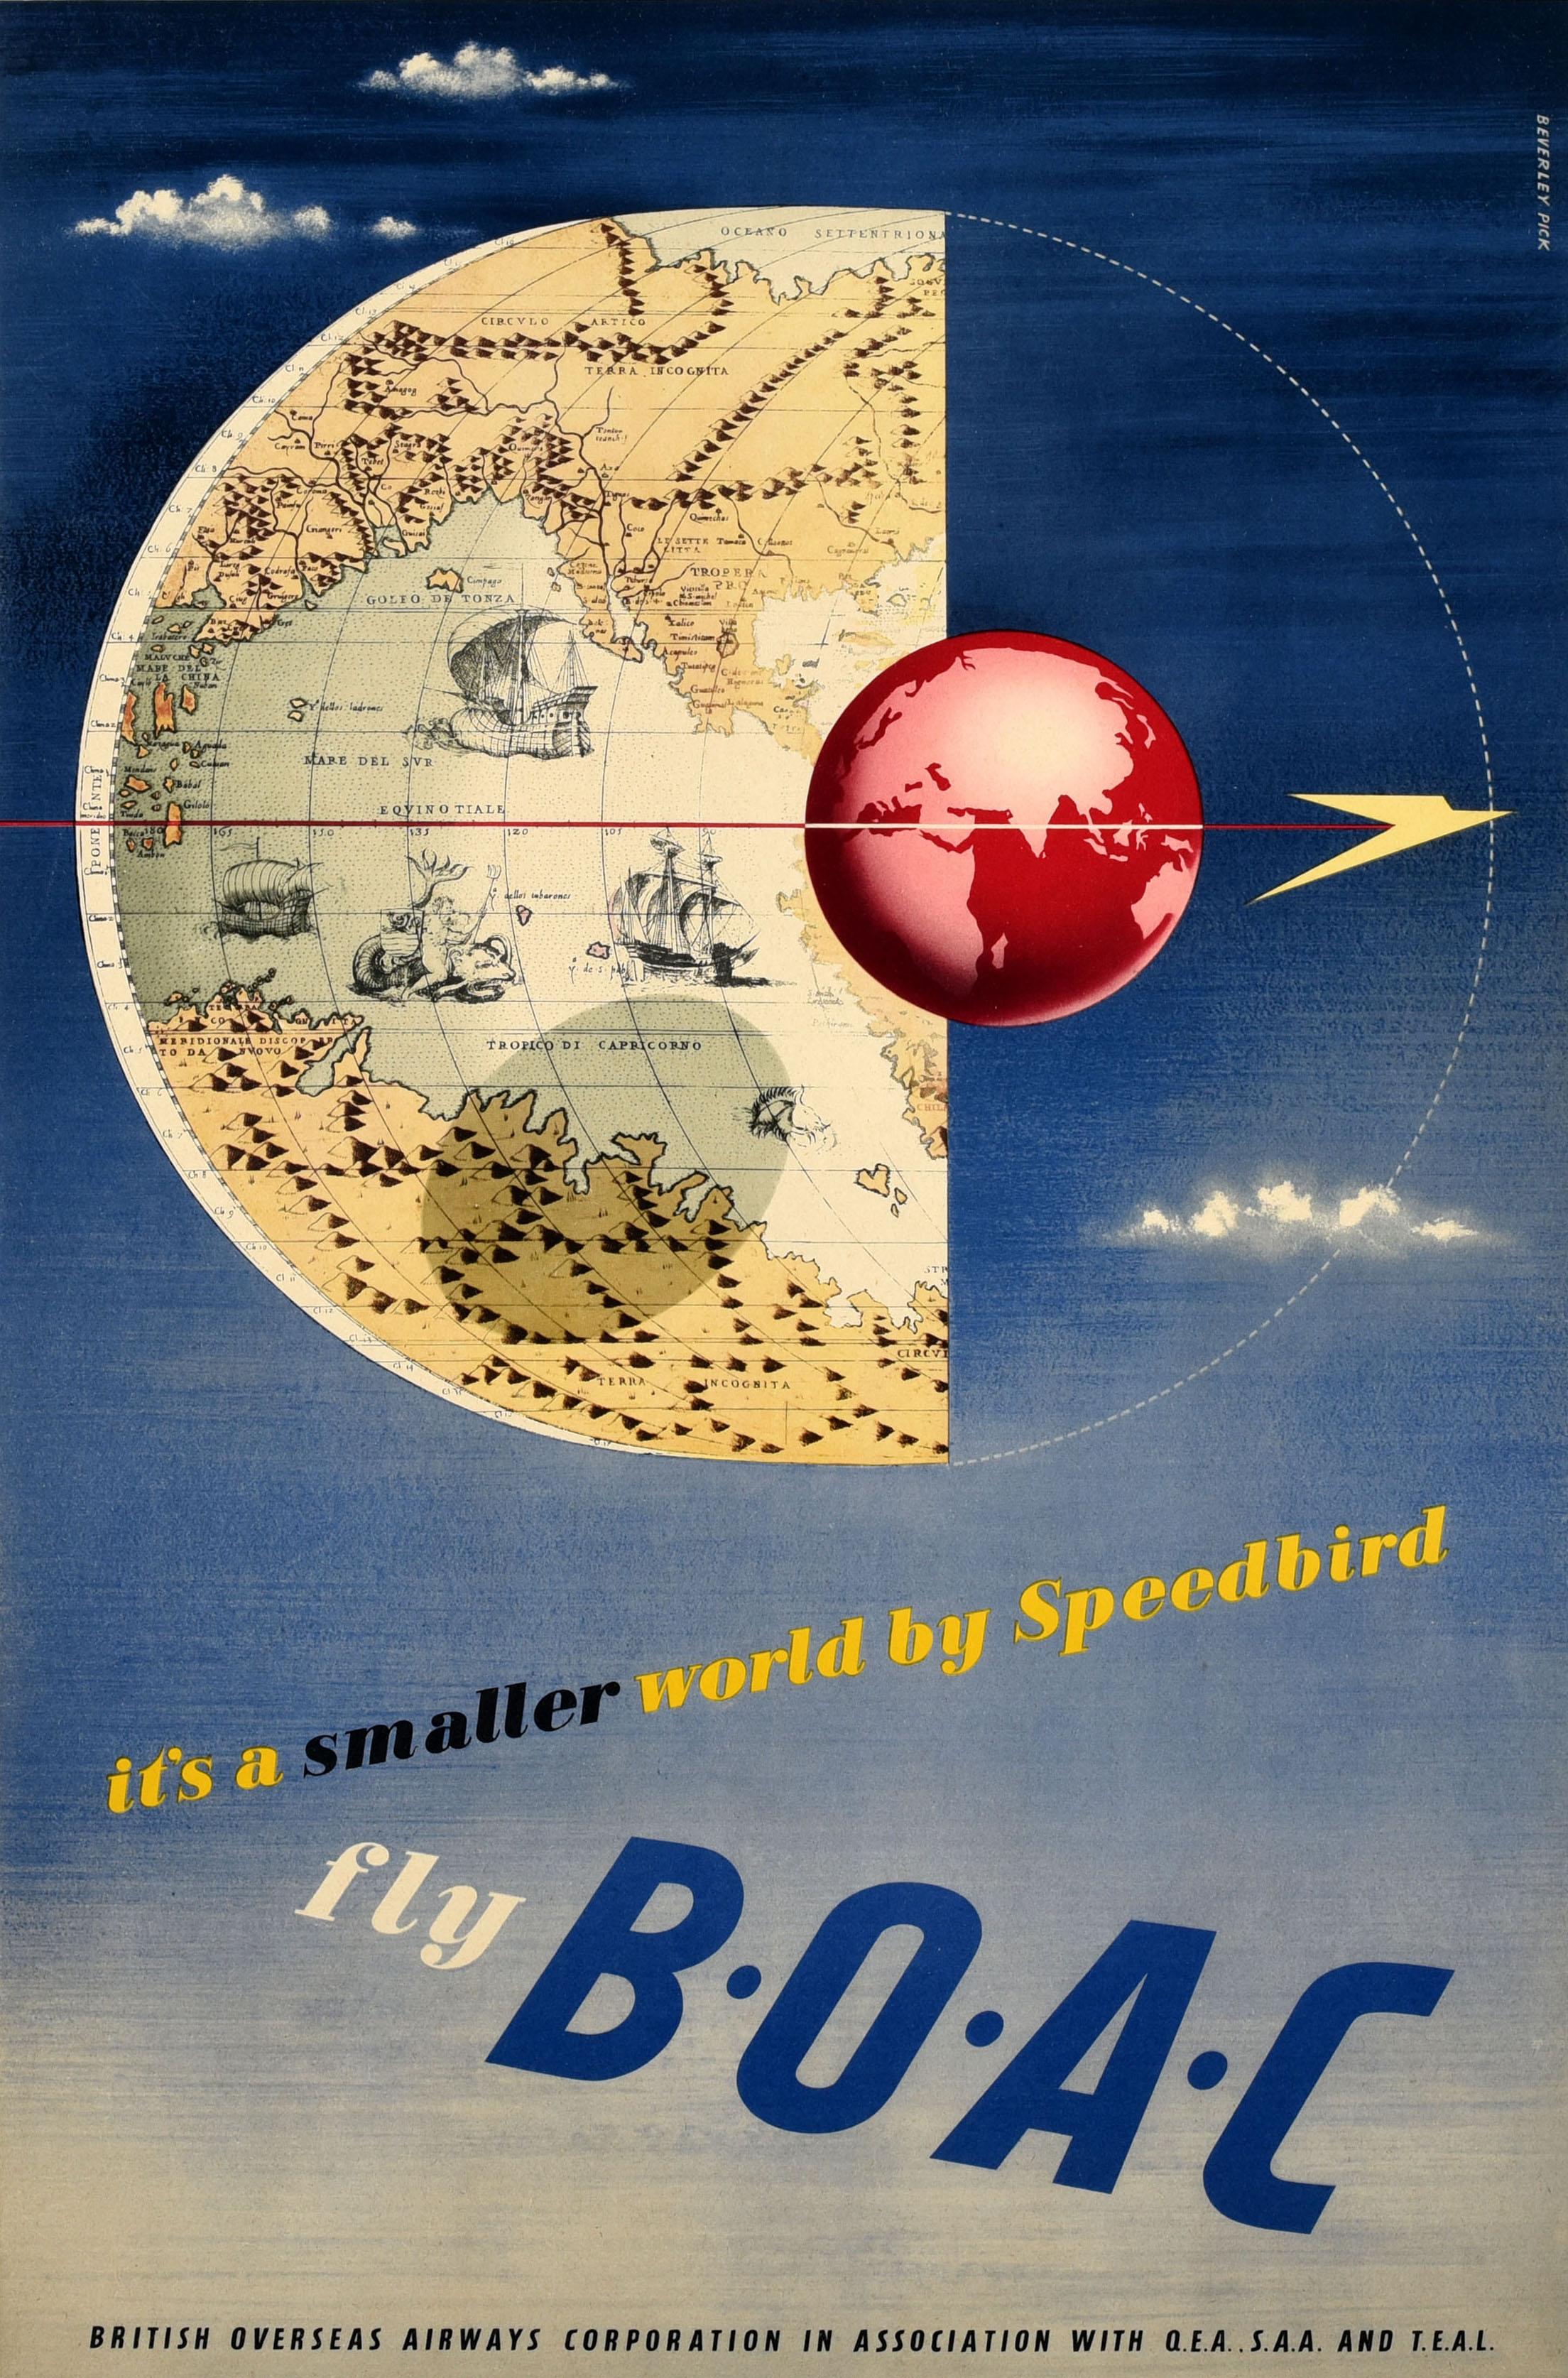 Affiche publicitaire originale de voyage - it's a smaller world by Speedbird fly BOAC - représentant une carte du monde moderne sur un globe rouge se reflétant sur une ancienne carte du monde montrant des grands voiliers naviguant en mer sur un fond